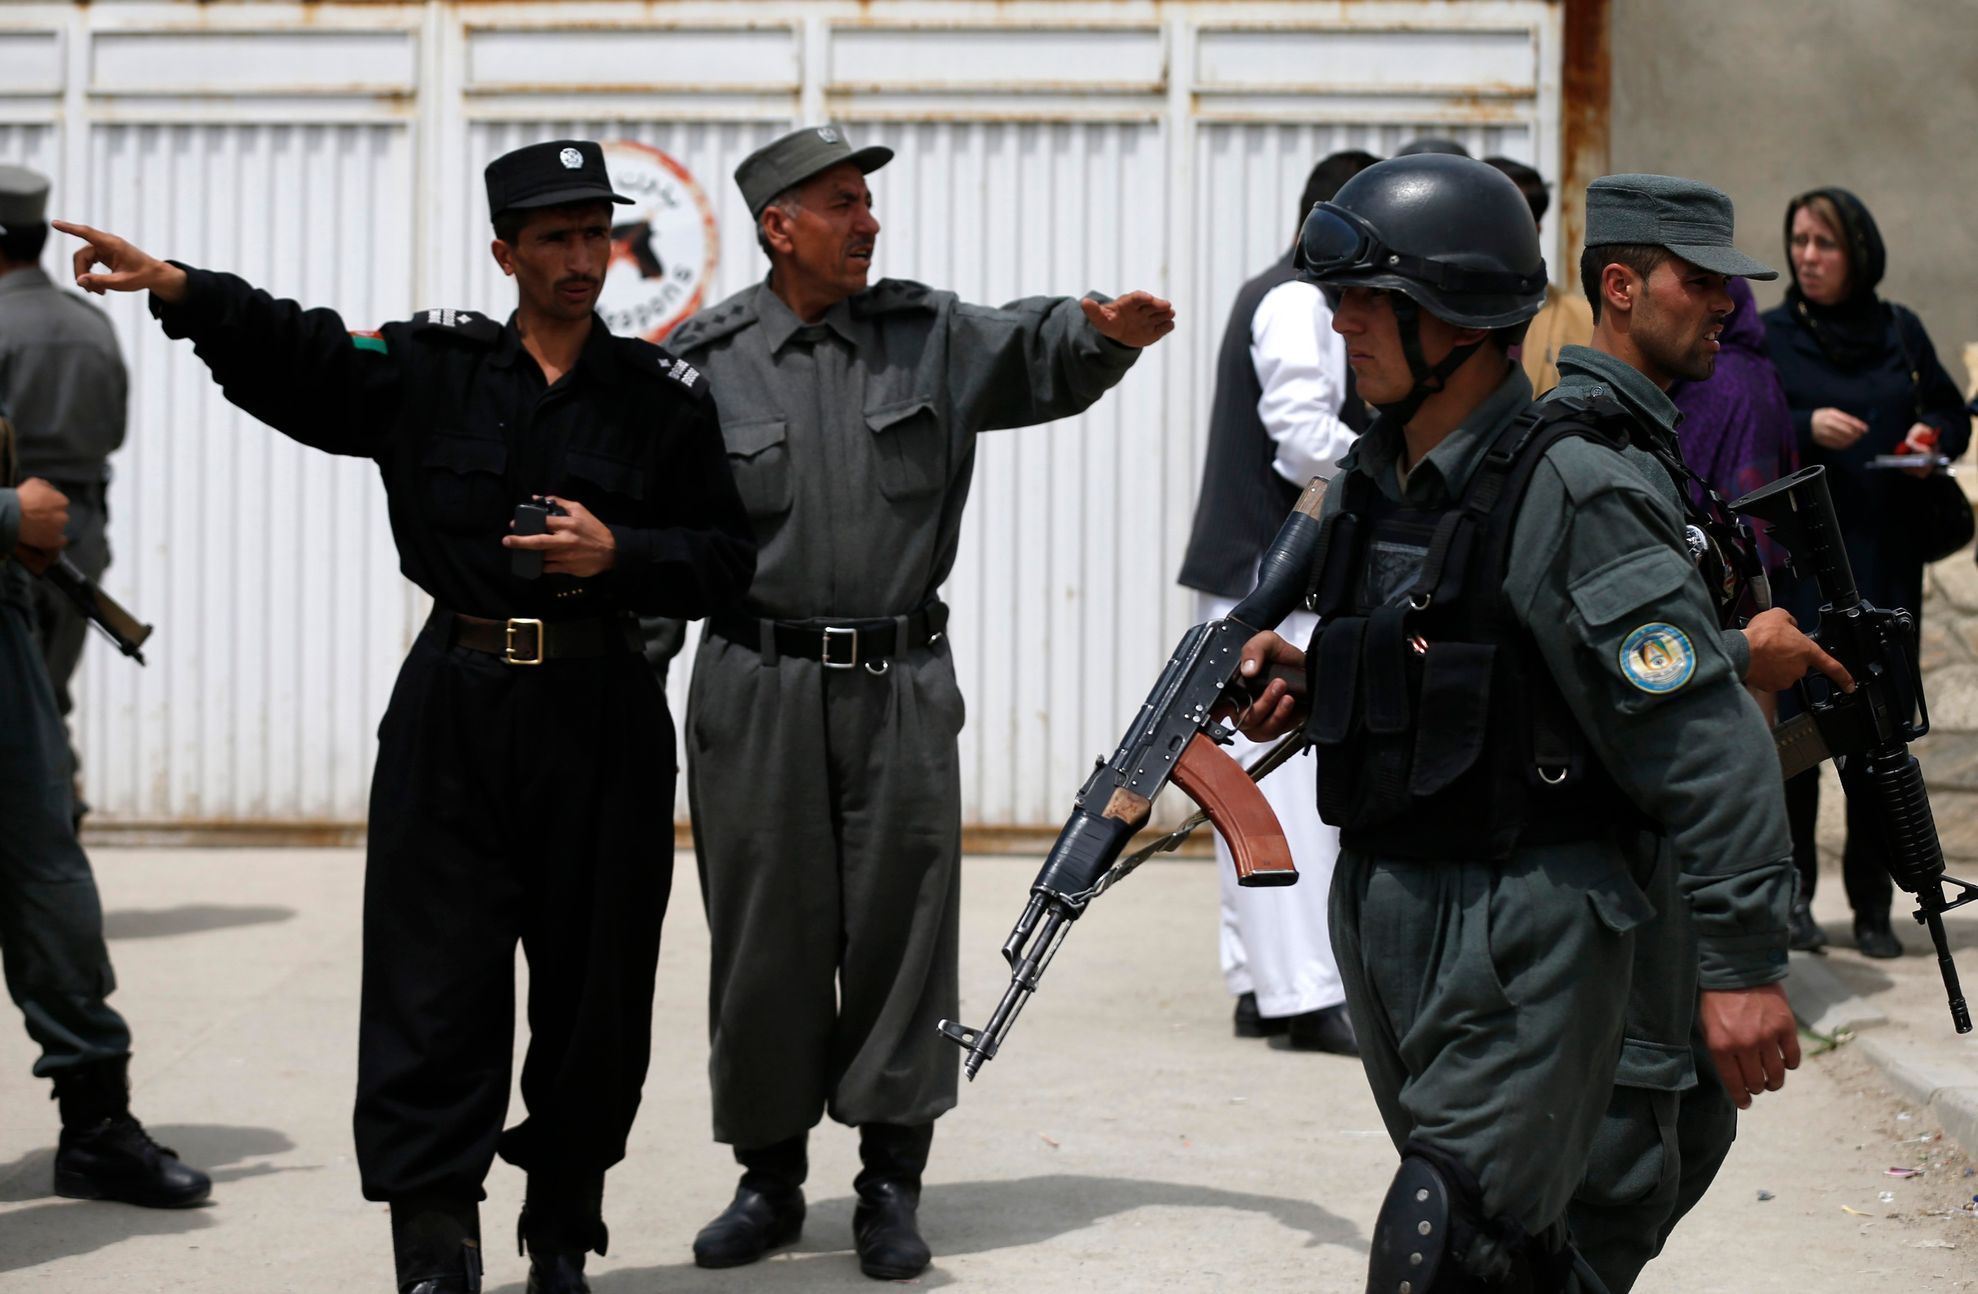 Afghánská policie